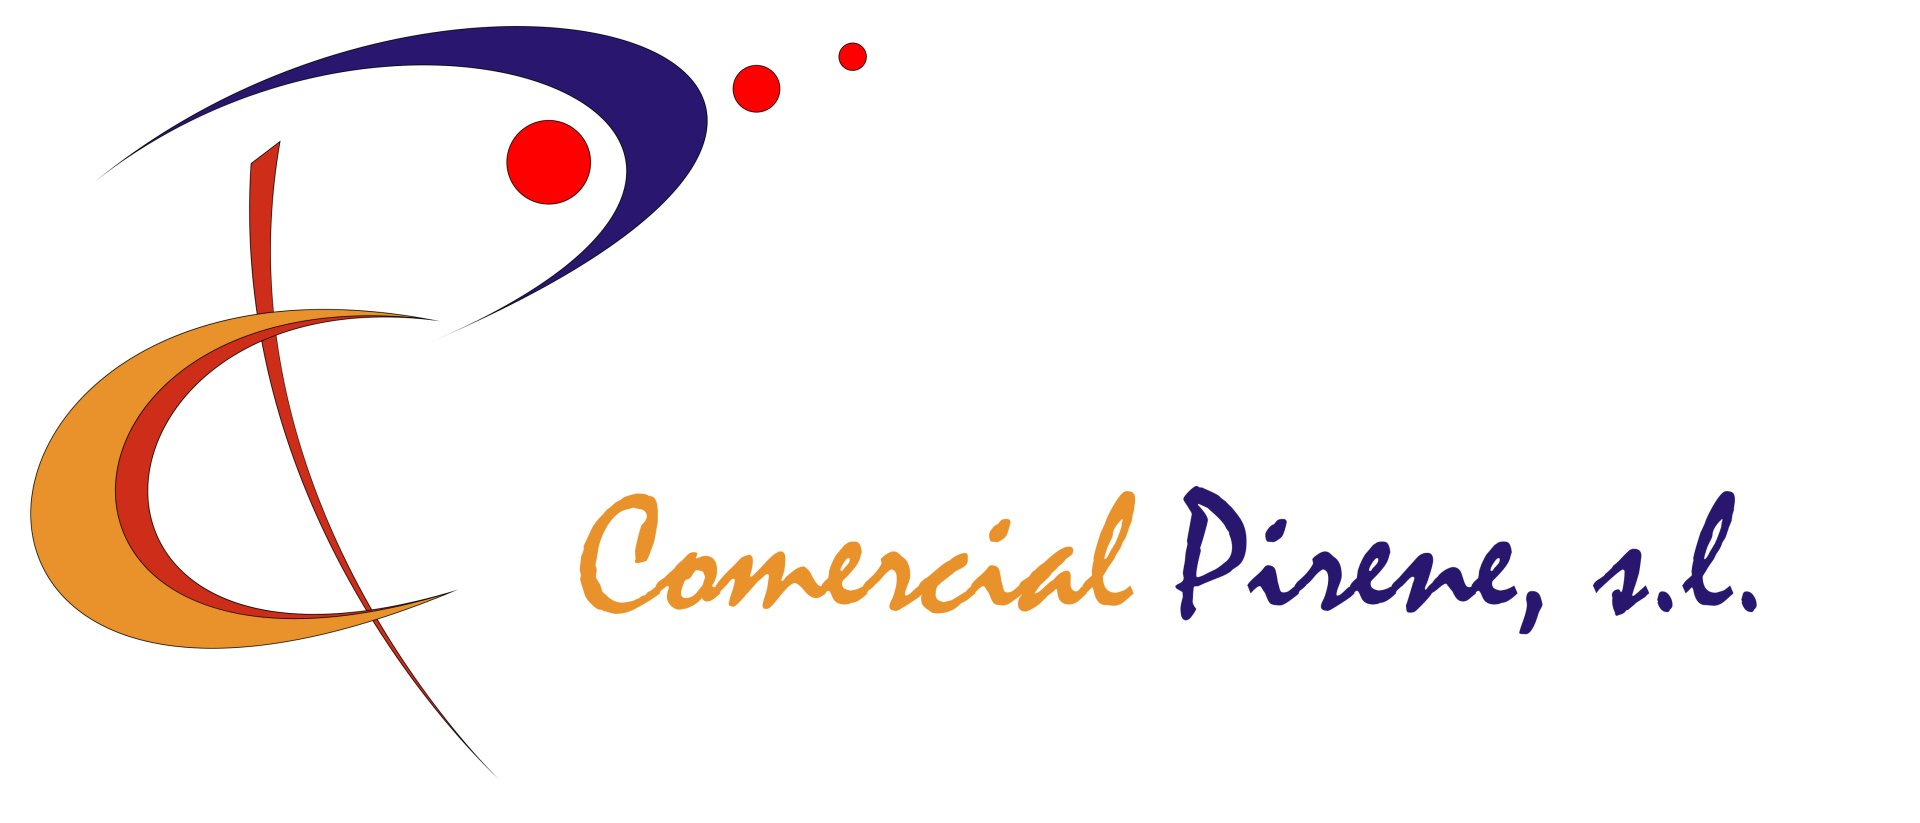 Commercial Pirene, S.L.-logo